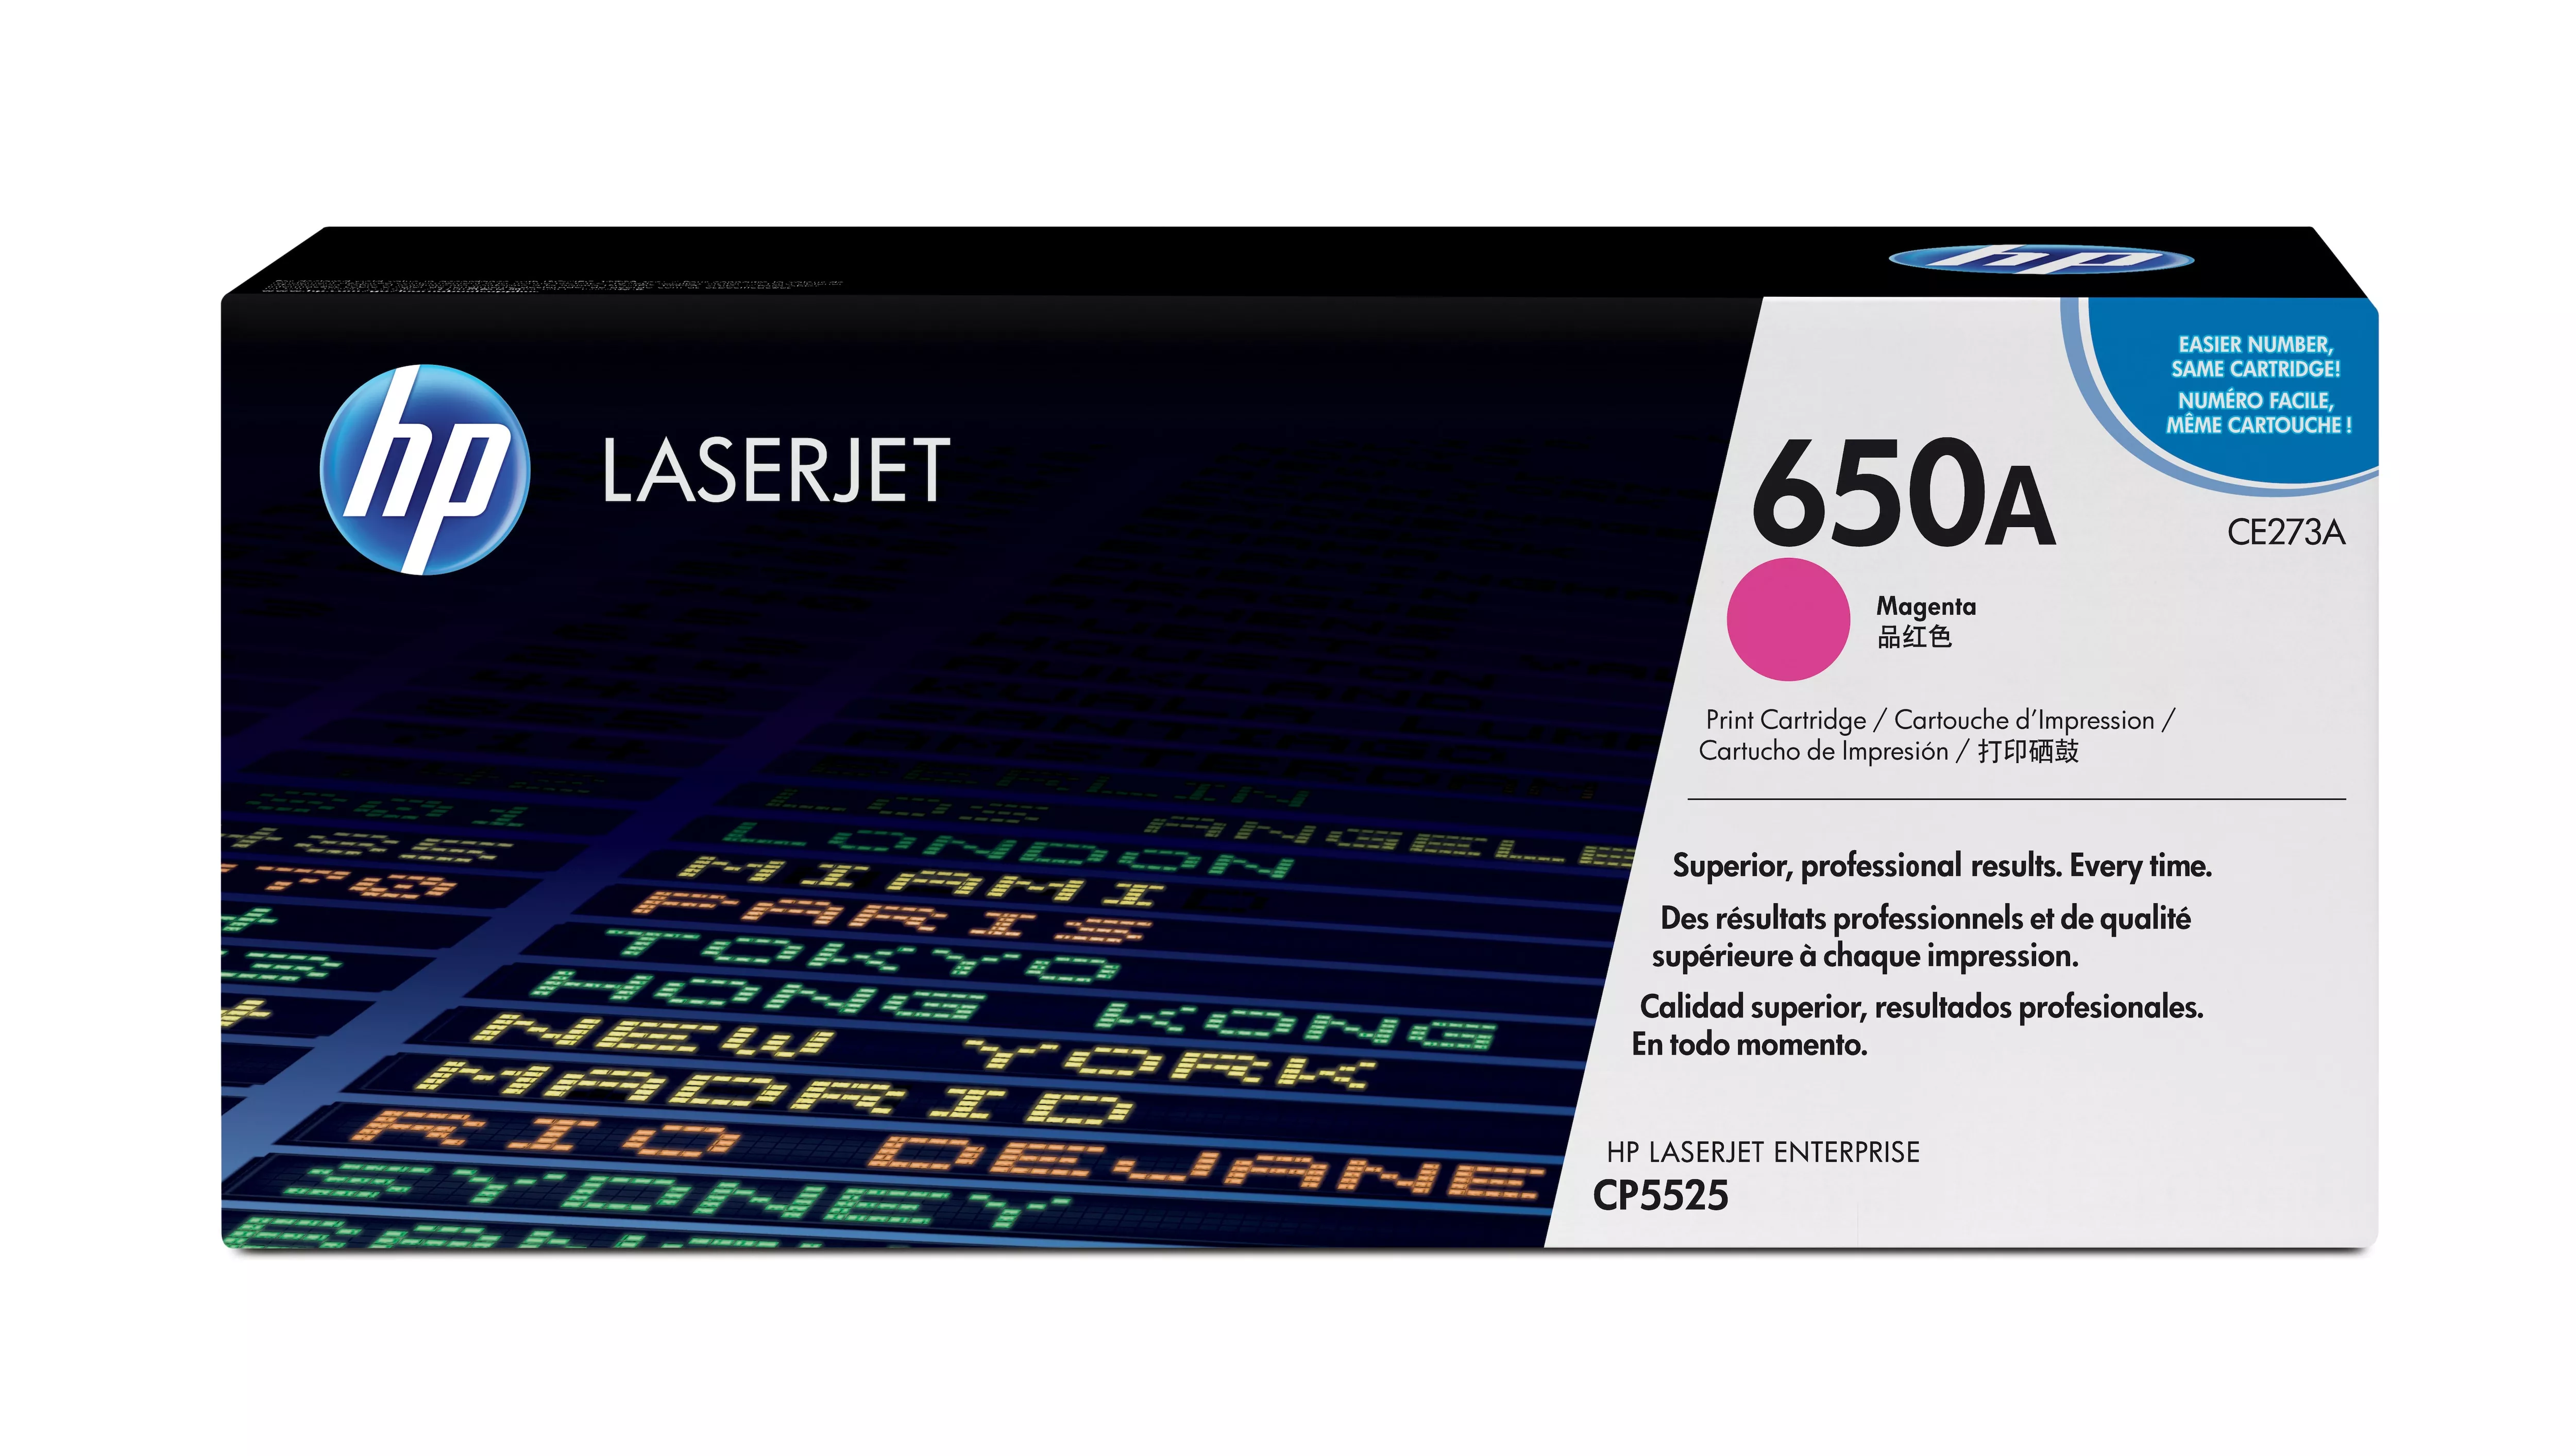 Achat HP original Colour LaserJet CE273A Toner cartridge magenta au meilleur prix